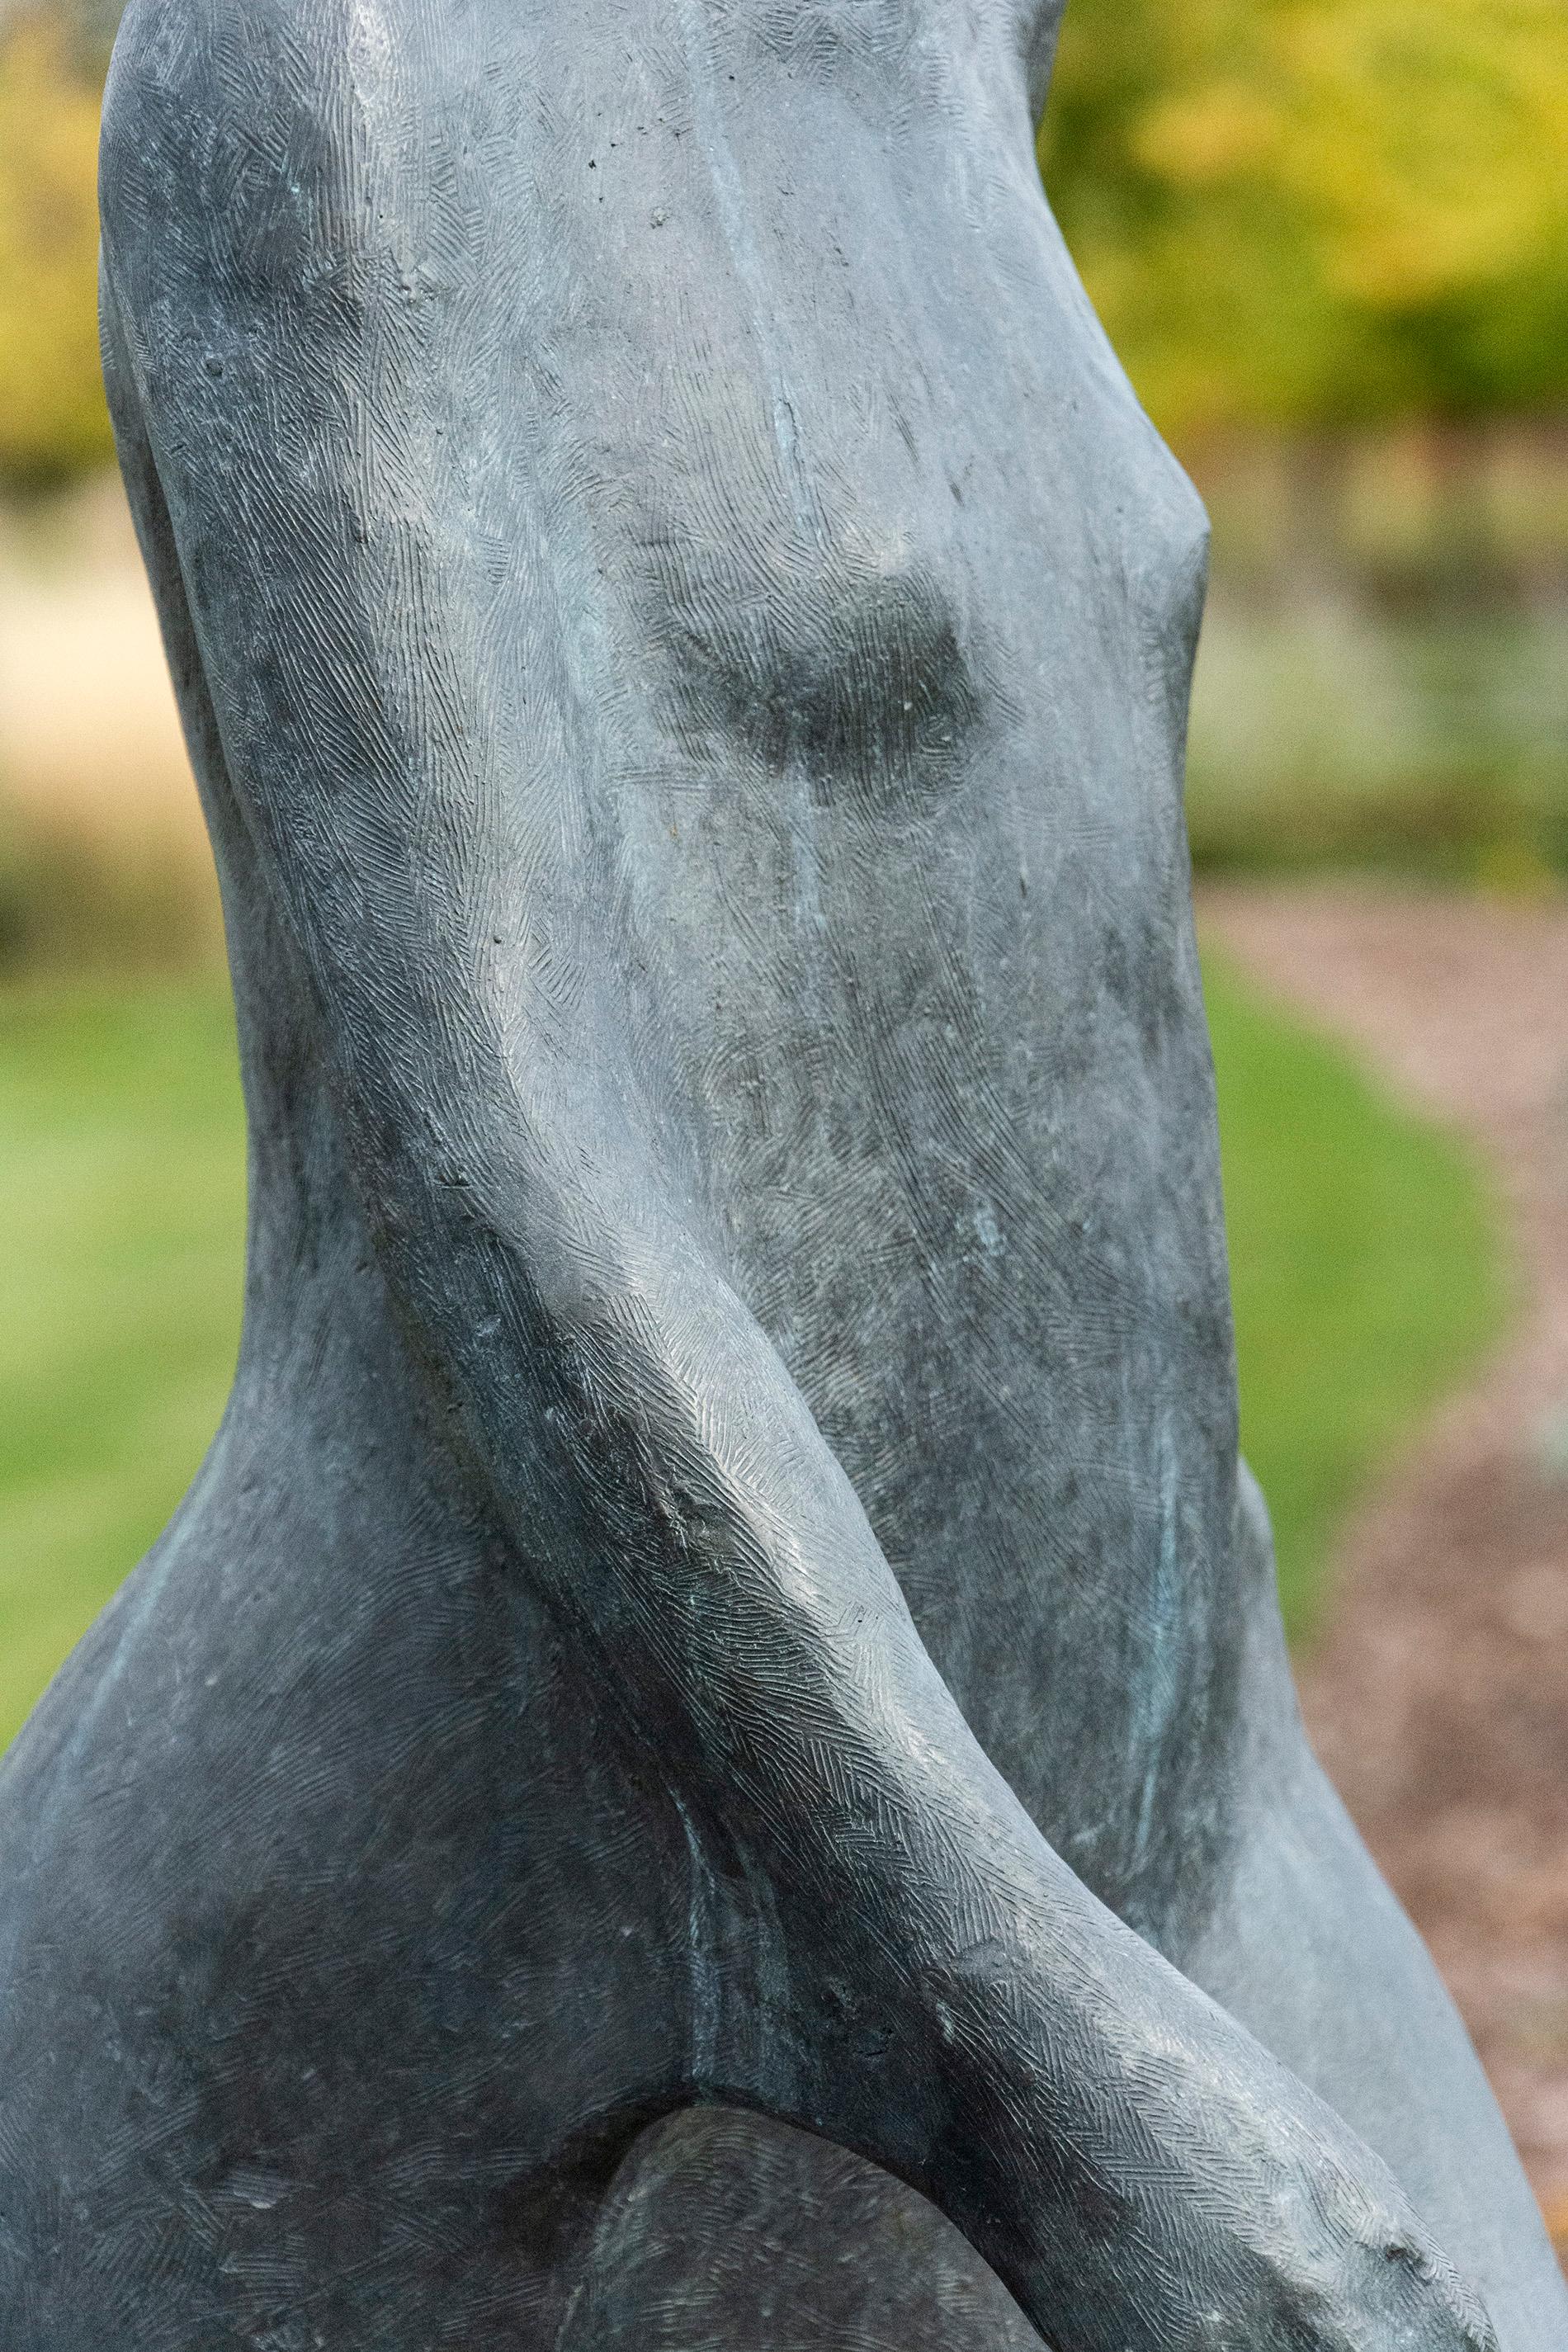 Mit vereinfachten Formen zeigt die Künstlerin Frances Semple in dieser Bronzeskulptur einer gehenden Frau die gefühlvolle Essenz der Bewegung. 

Mit einer Höhe von 60 Zoll ist die Figur lebensgroß. Die Skulptur ist vom Künstler mit den Initialen und